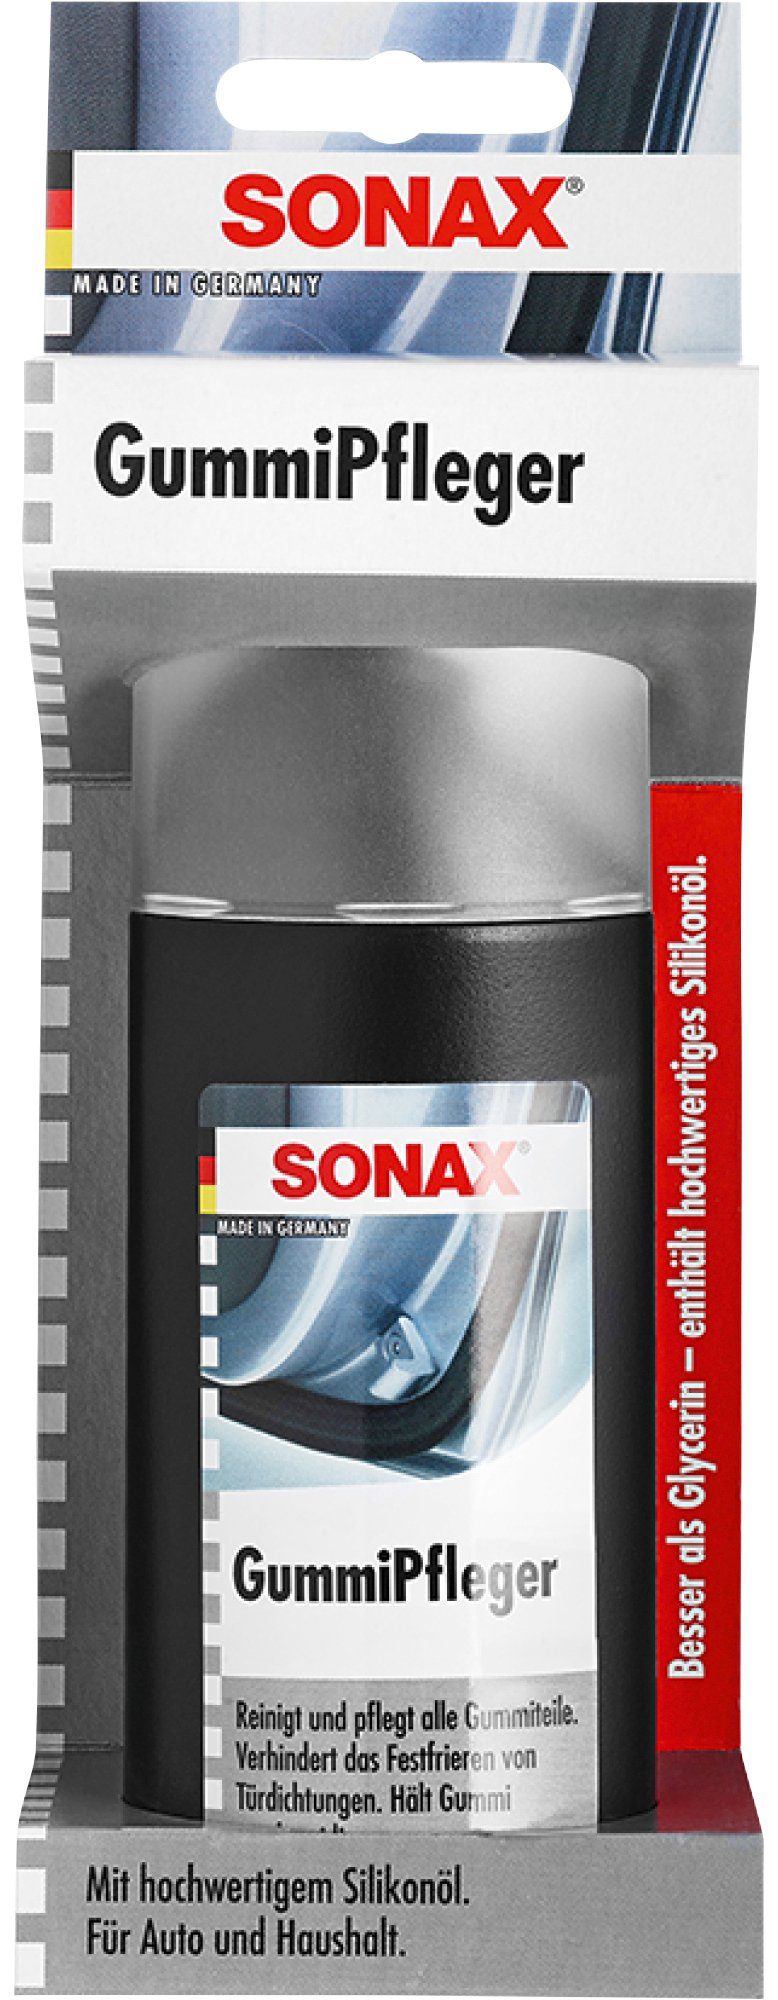 Sonax »Gummi-Pfleger« Reifenpflege, 100 ml